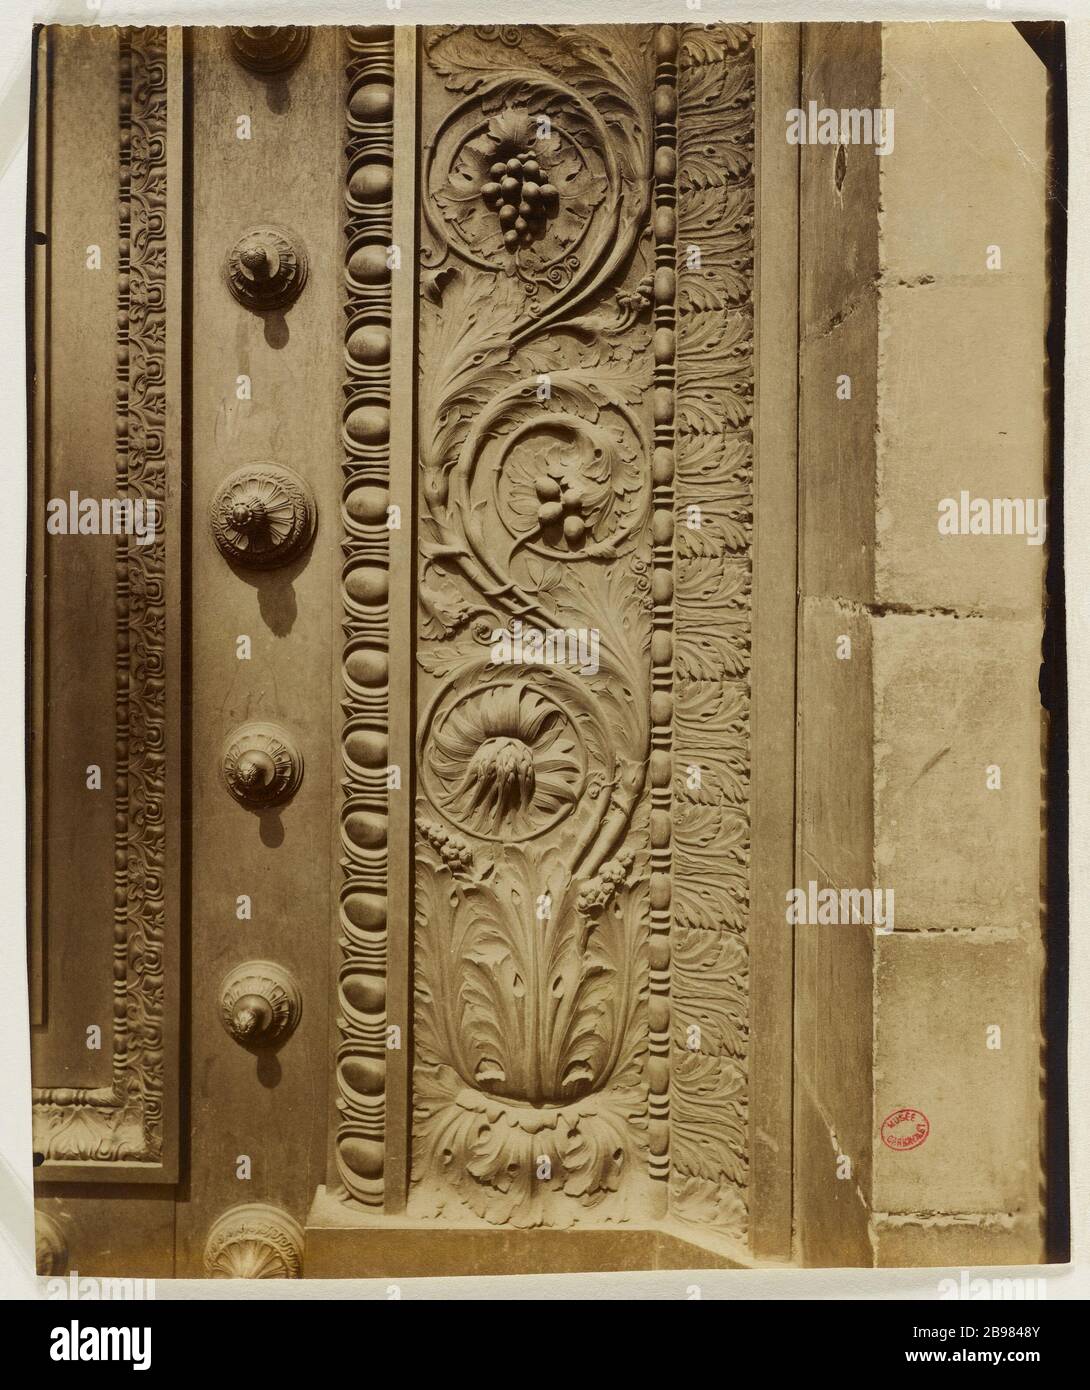 DETAIL OF DOOR CHURCH OF THE MADELEINE, 8TH DISTRICT, PARIS Détail de porte, église de la Madeleine, Paris (VIIIème arr.), 1907. Photographie d'Eugène Atget (1857-1927). Paris, musée Carnavalet. Stock Photo